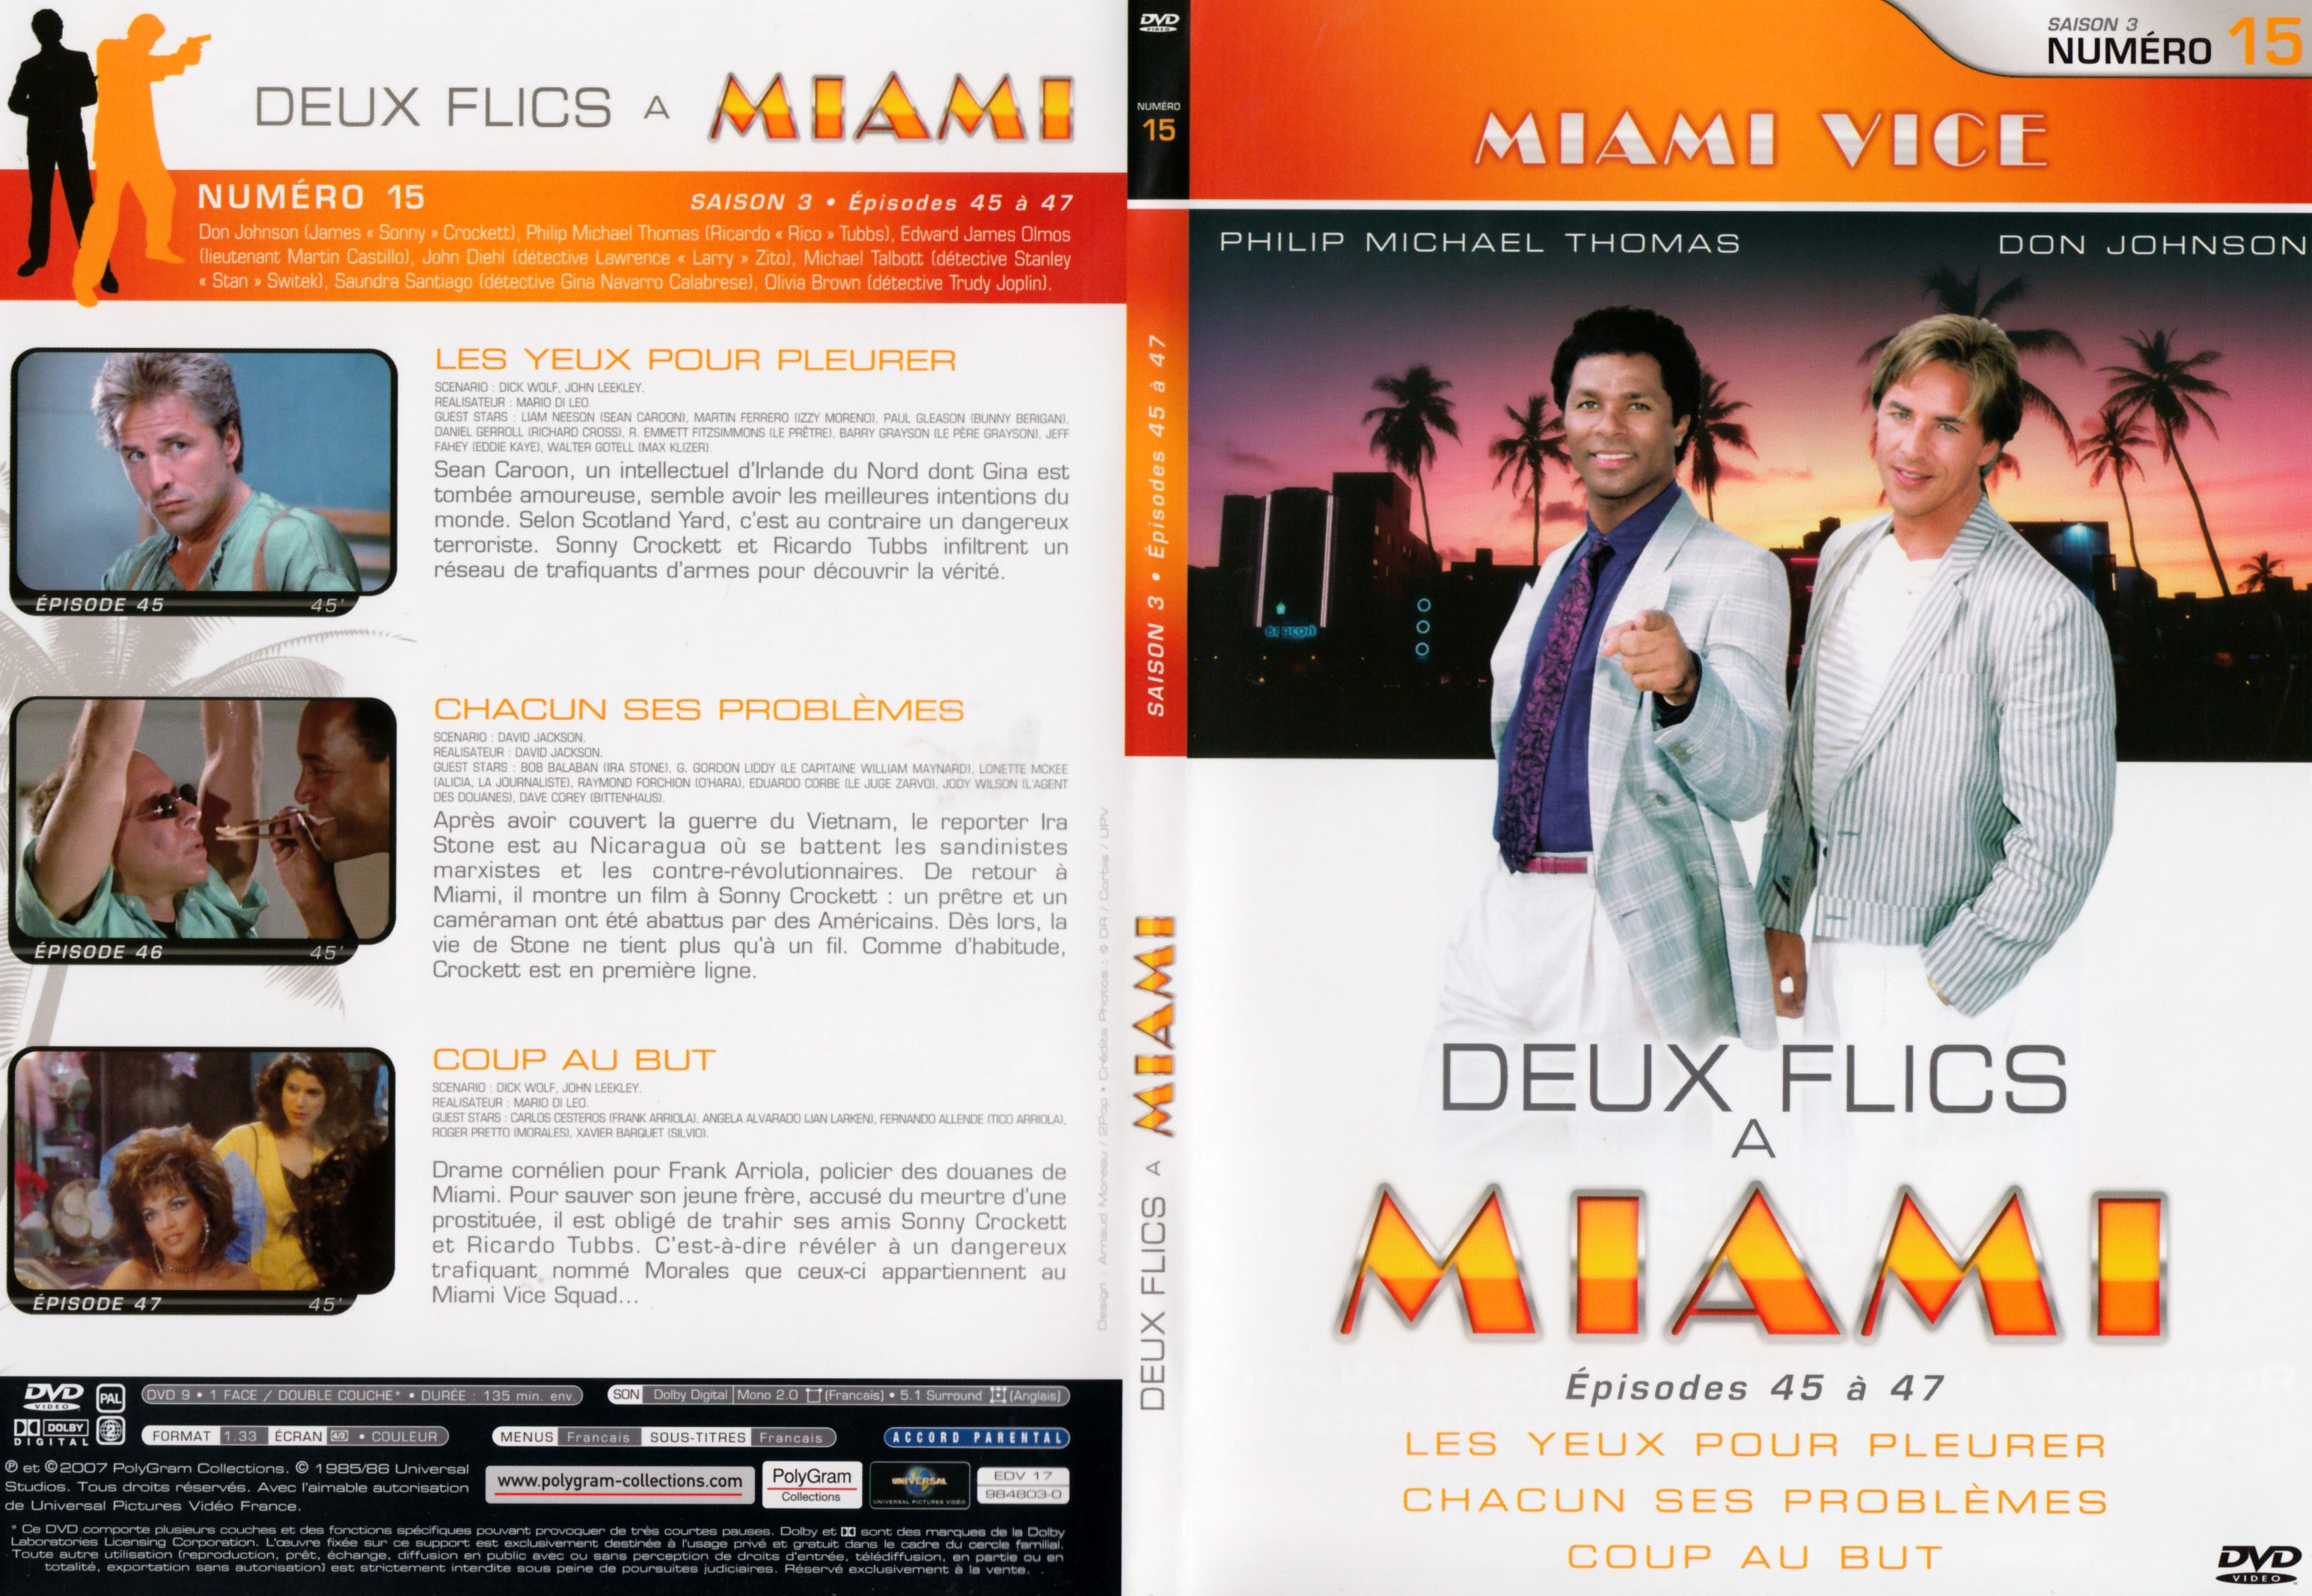 Jaquette DVD Deux flics  Miami Saison 3 vol 15